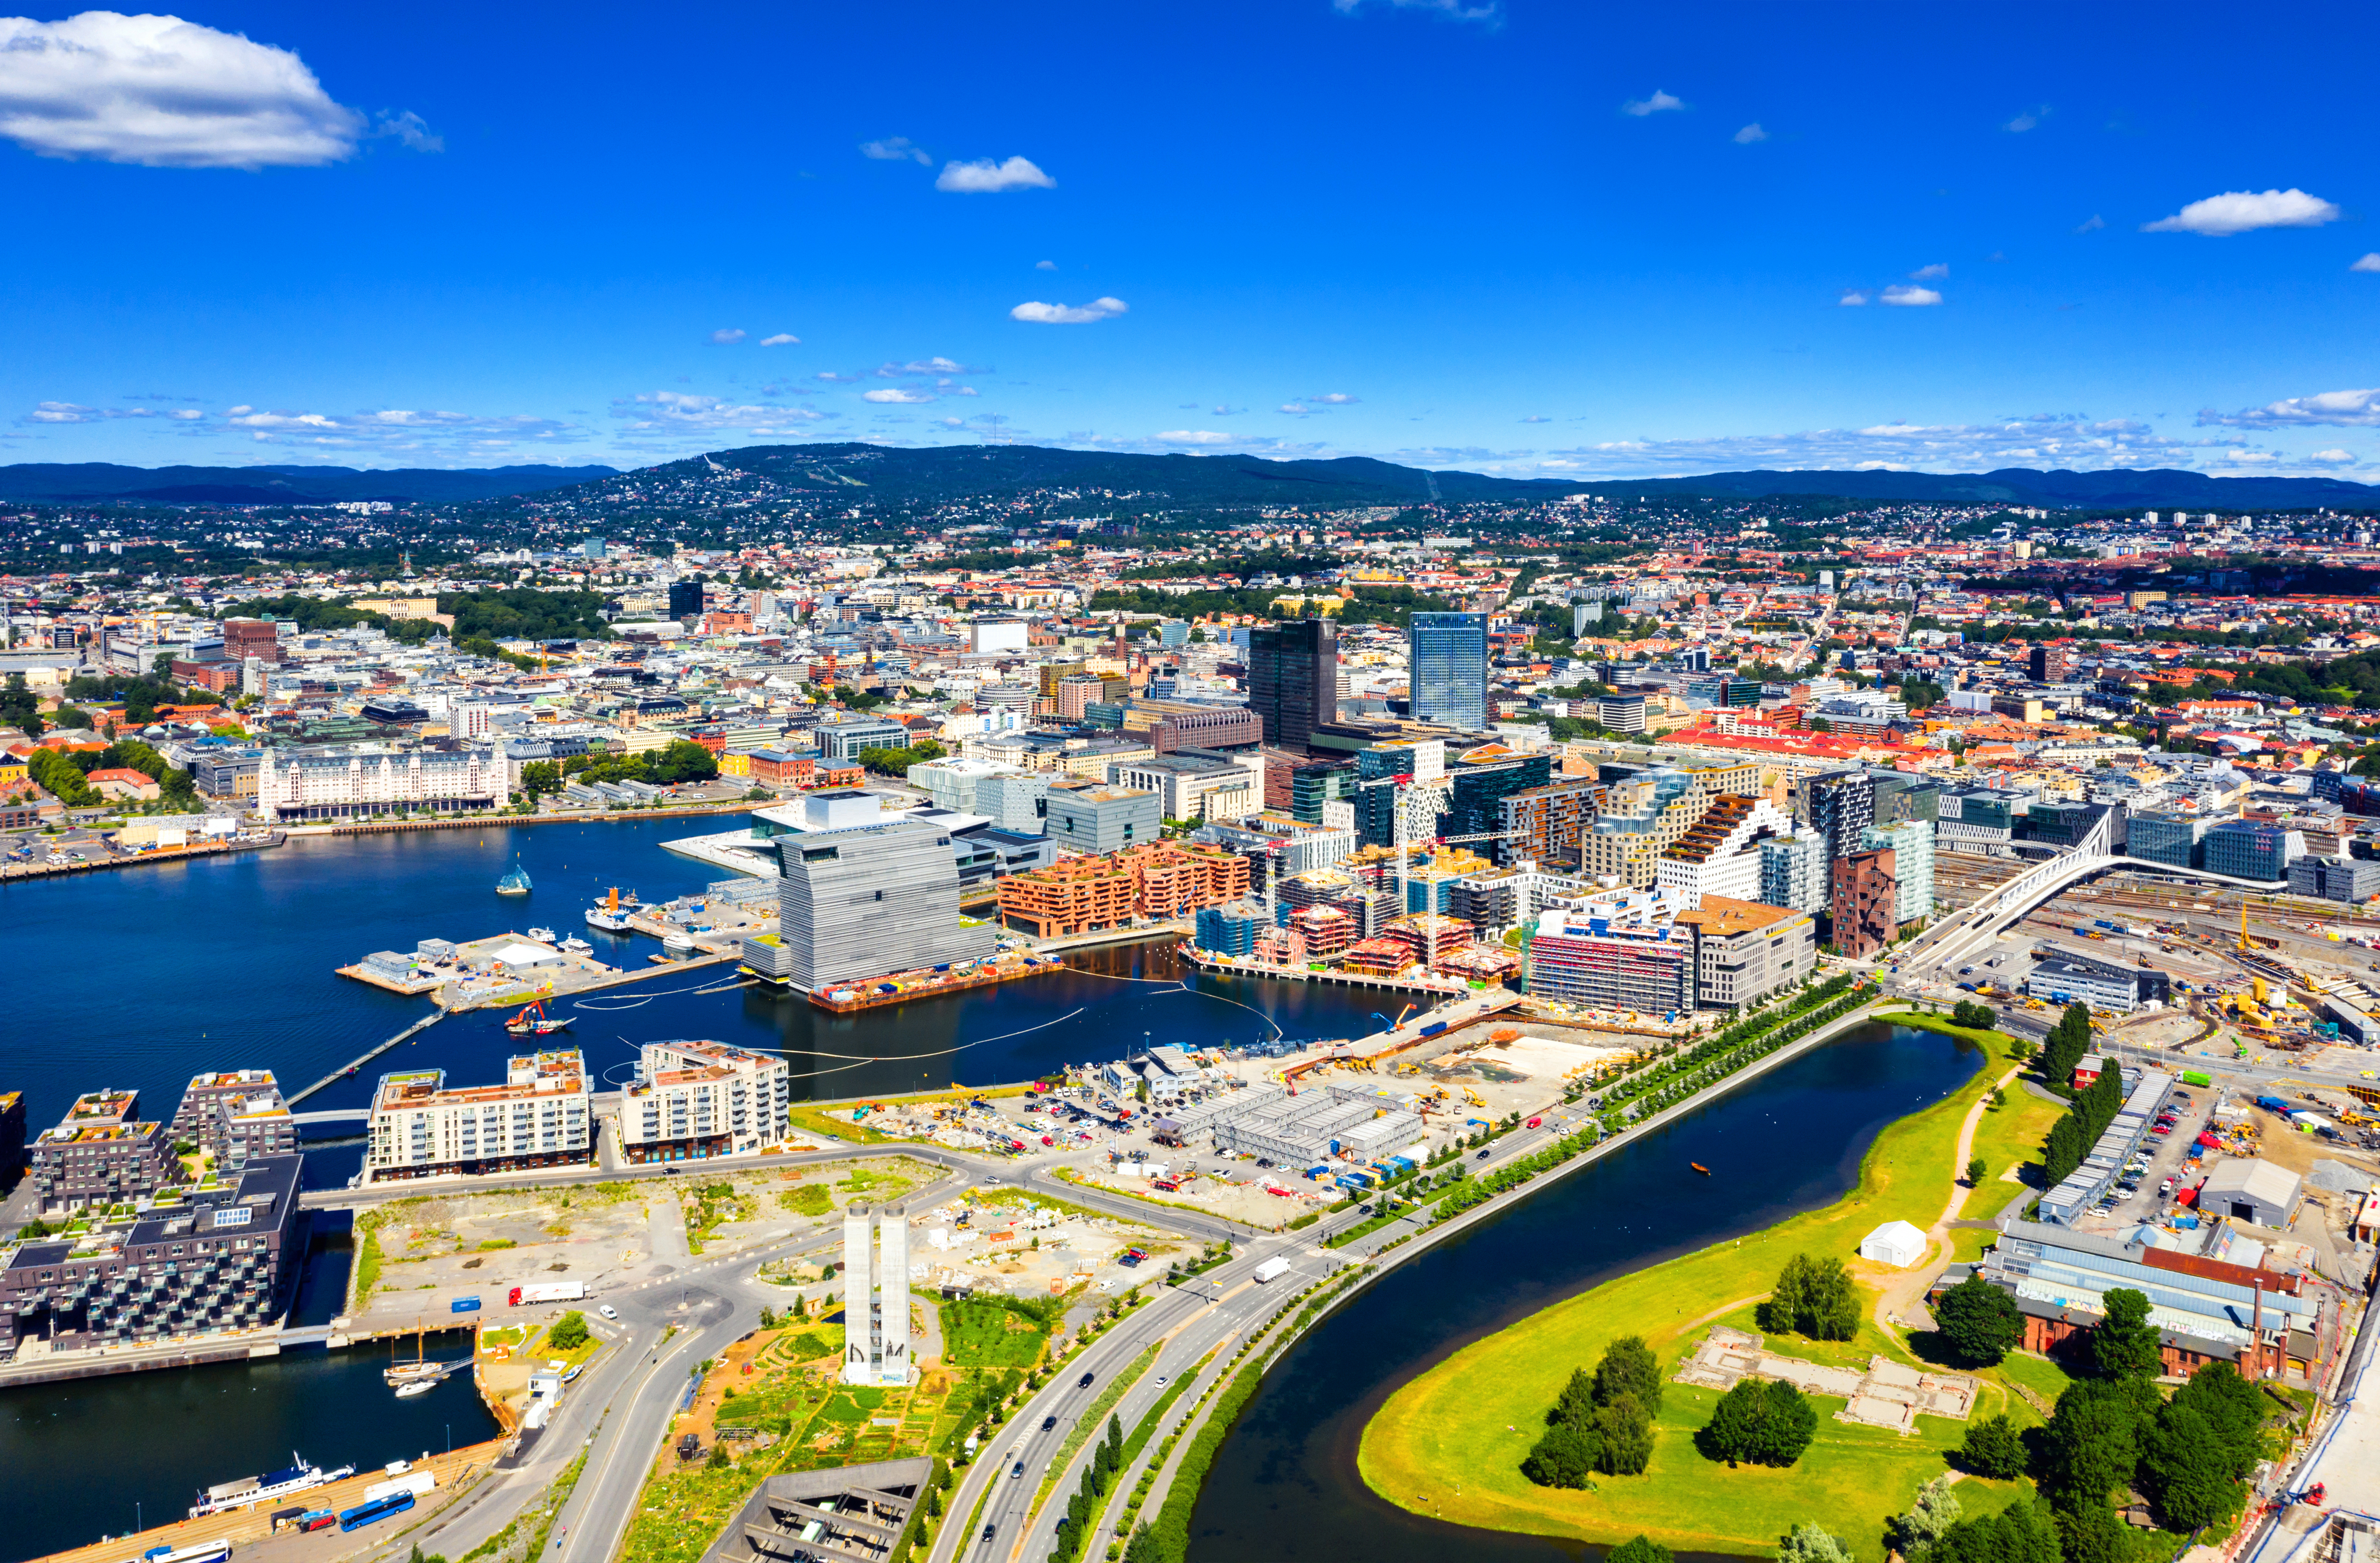 Вид на Осло, столицу Норвегии, ПМЖ которой могут получить иностранцы